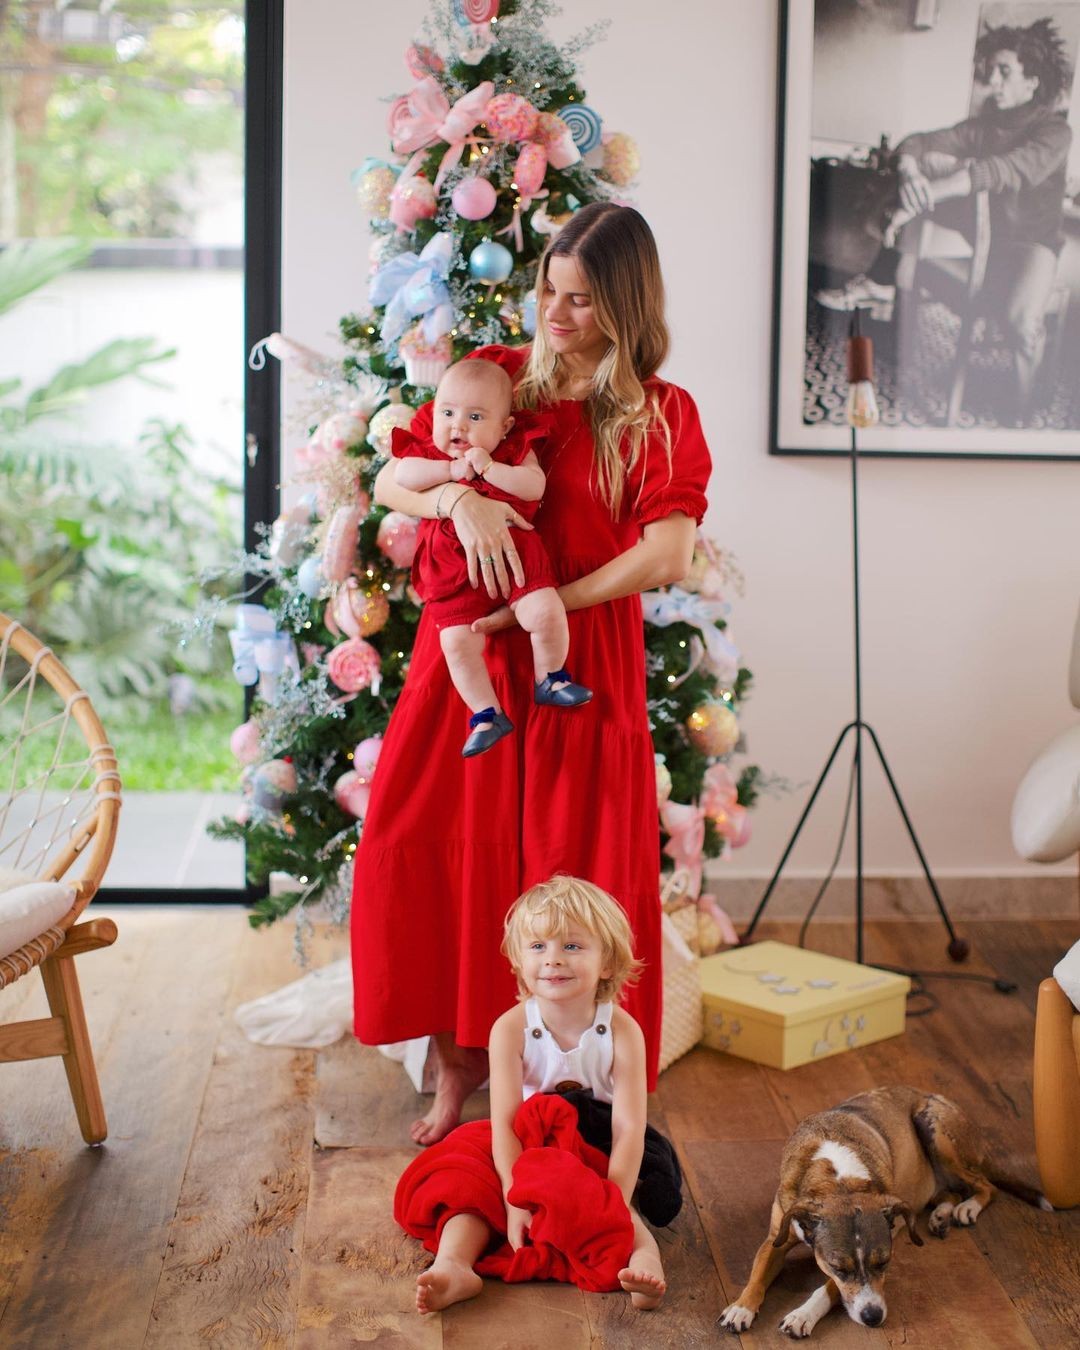 Shantal compartilha cliques natalinos em família e encanta internet  (Foto: Reprodução / Instagram)